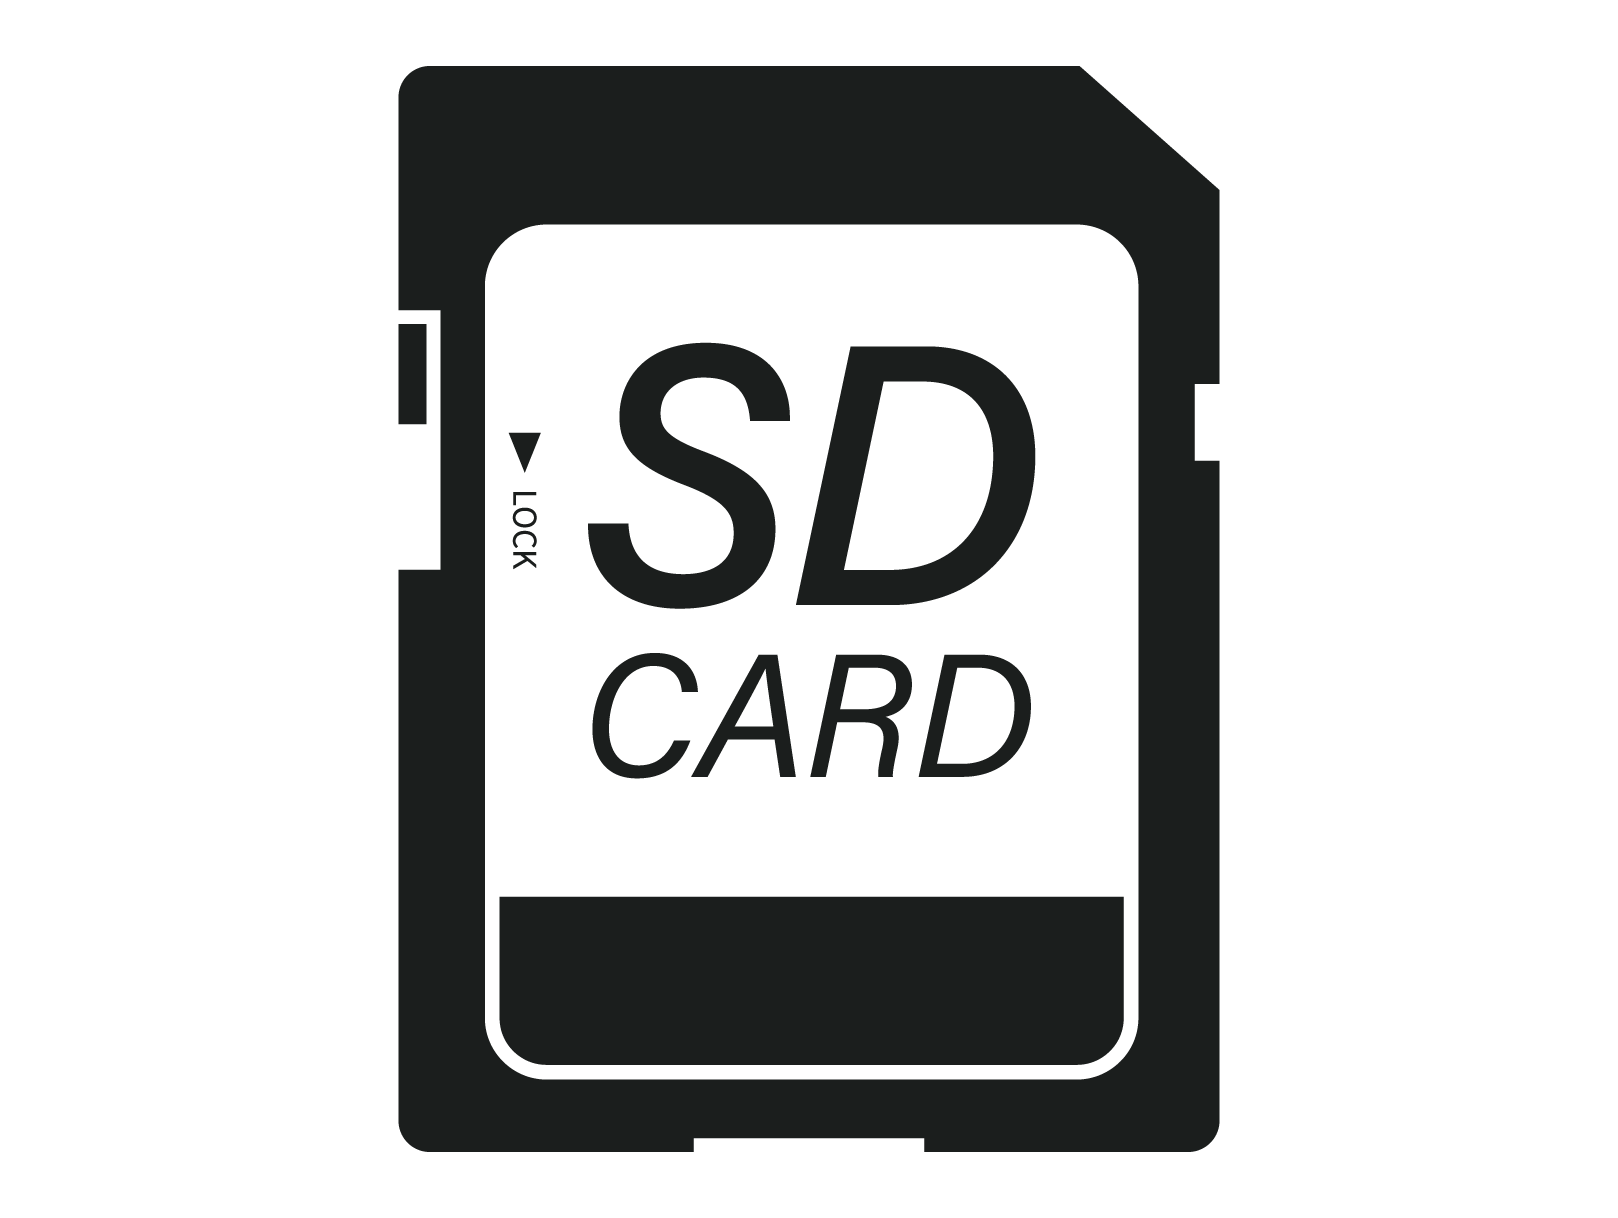 パソコンでSDカードの容量を簡単に確認する方法 | 中古パソコン くじらや